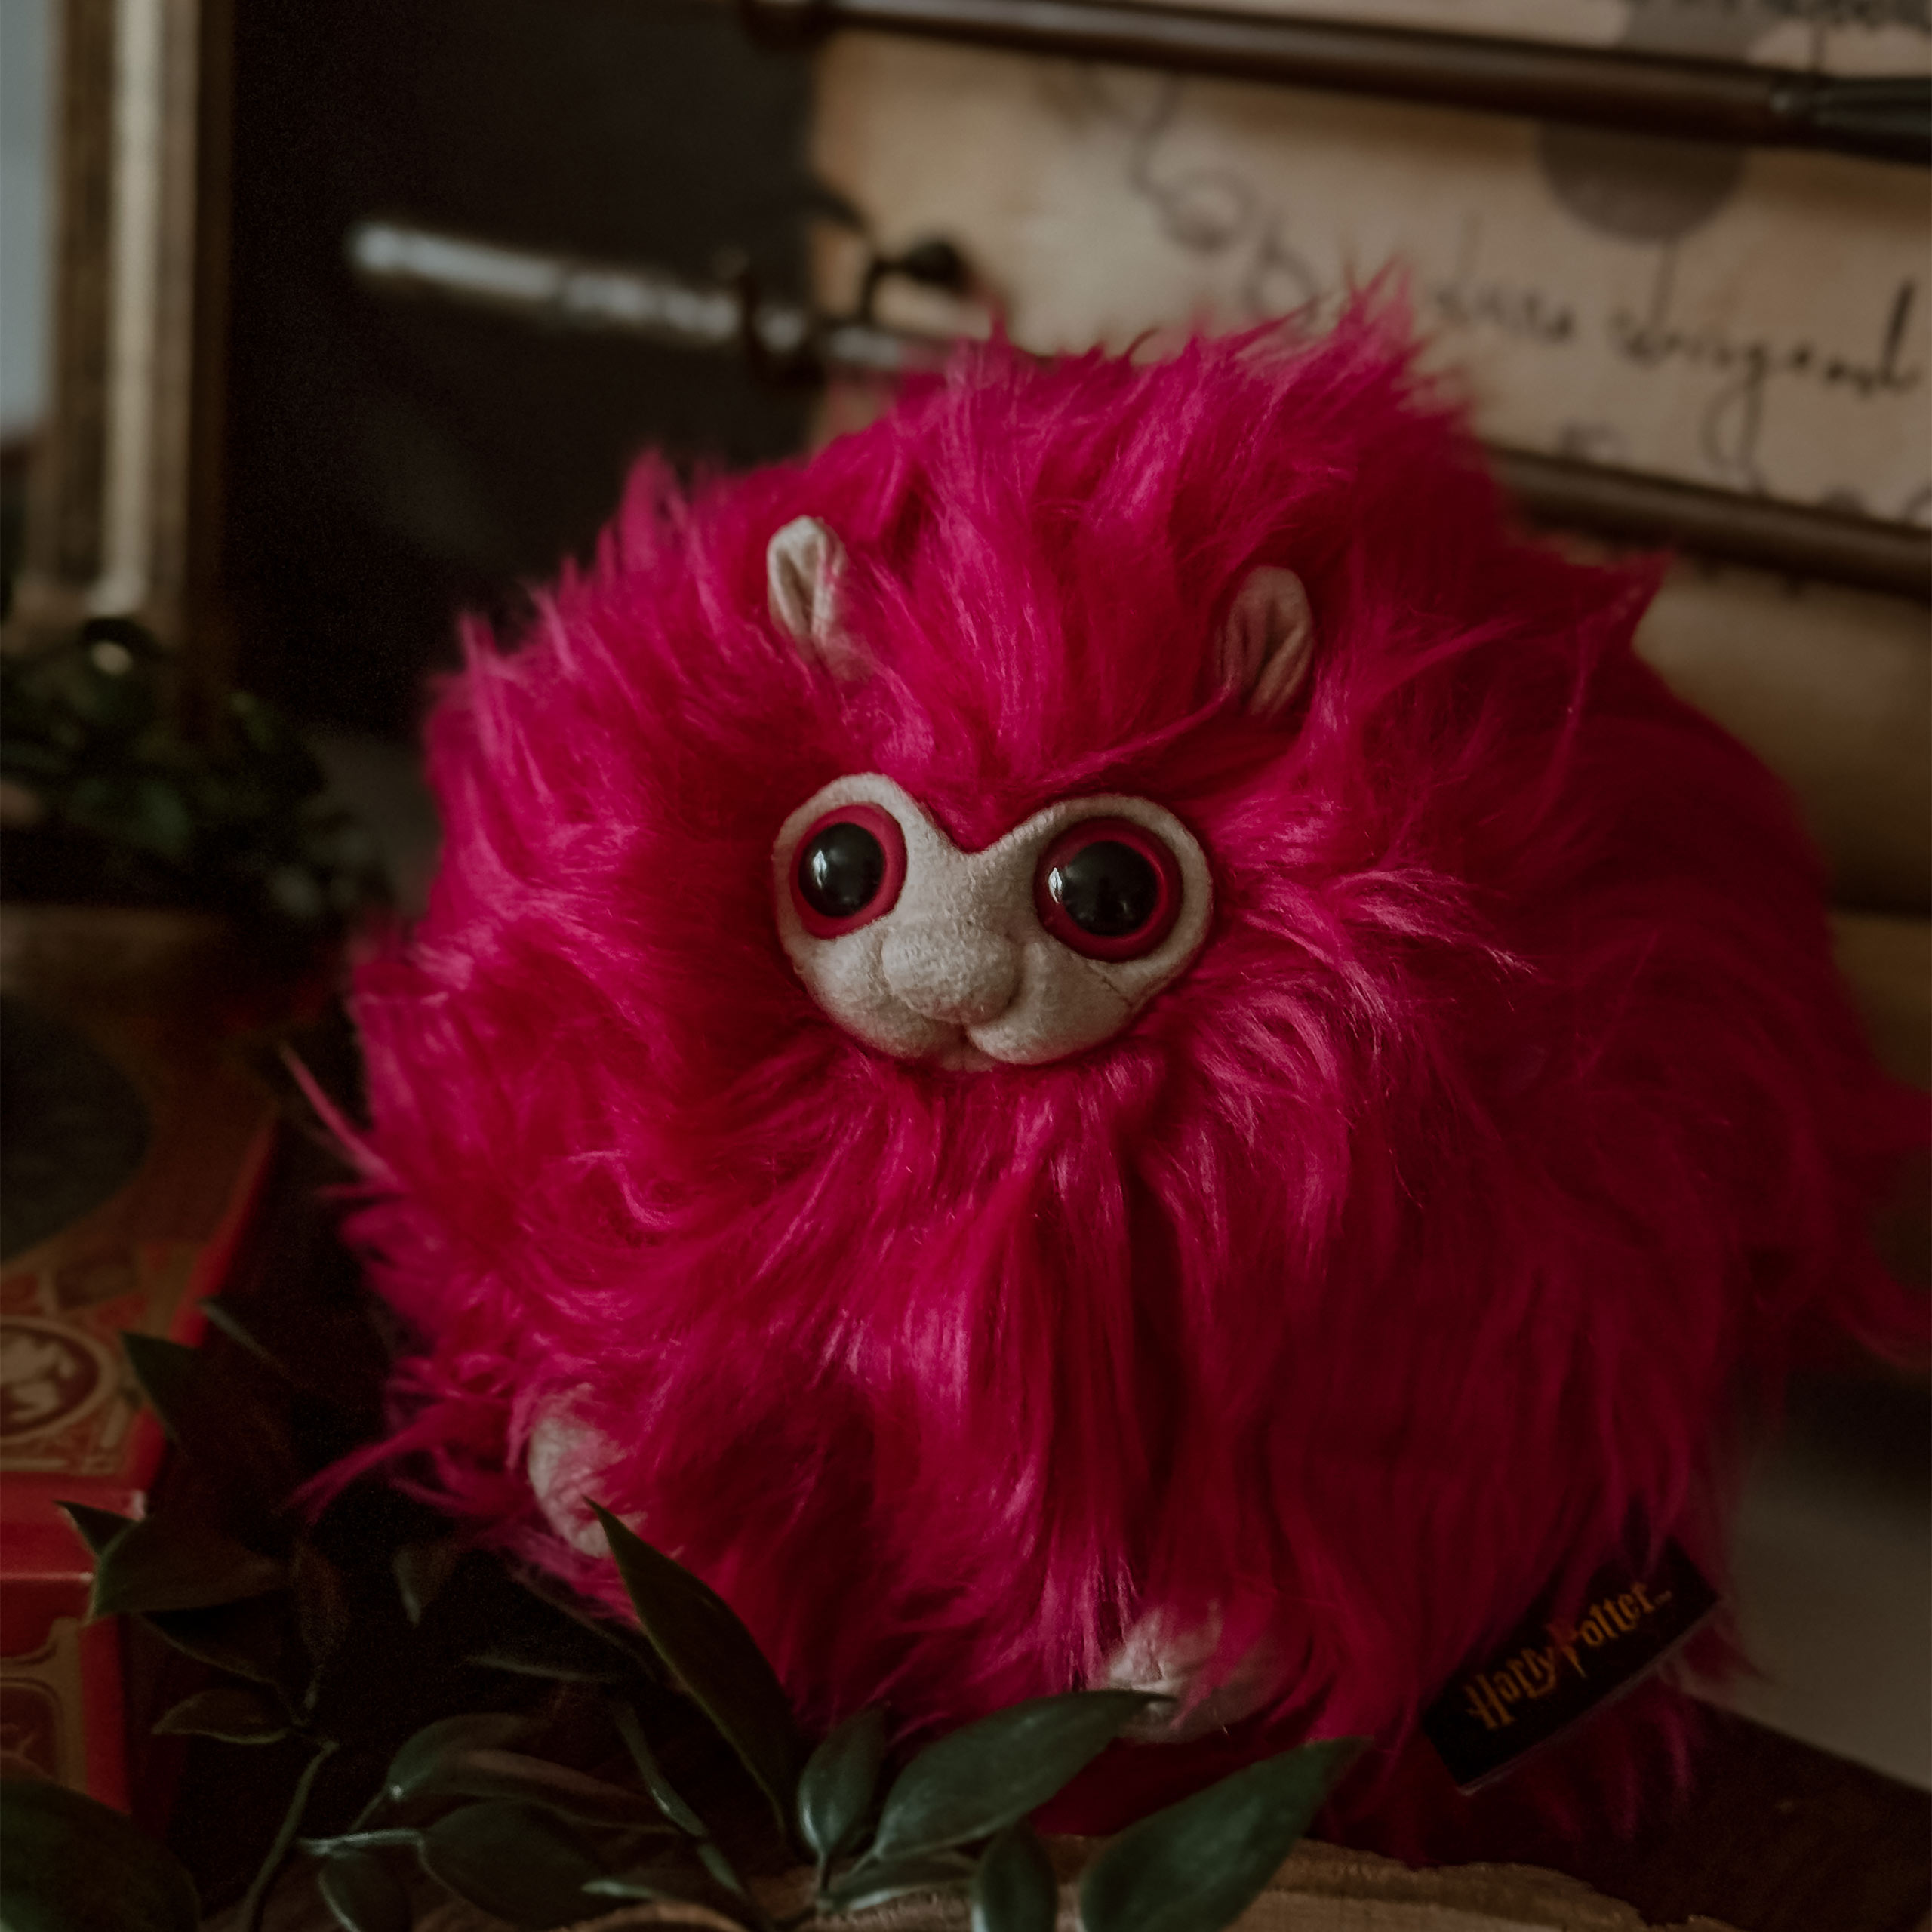 Harry Potter - Pygmy Puff Plush Figure Pink